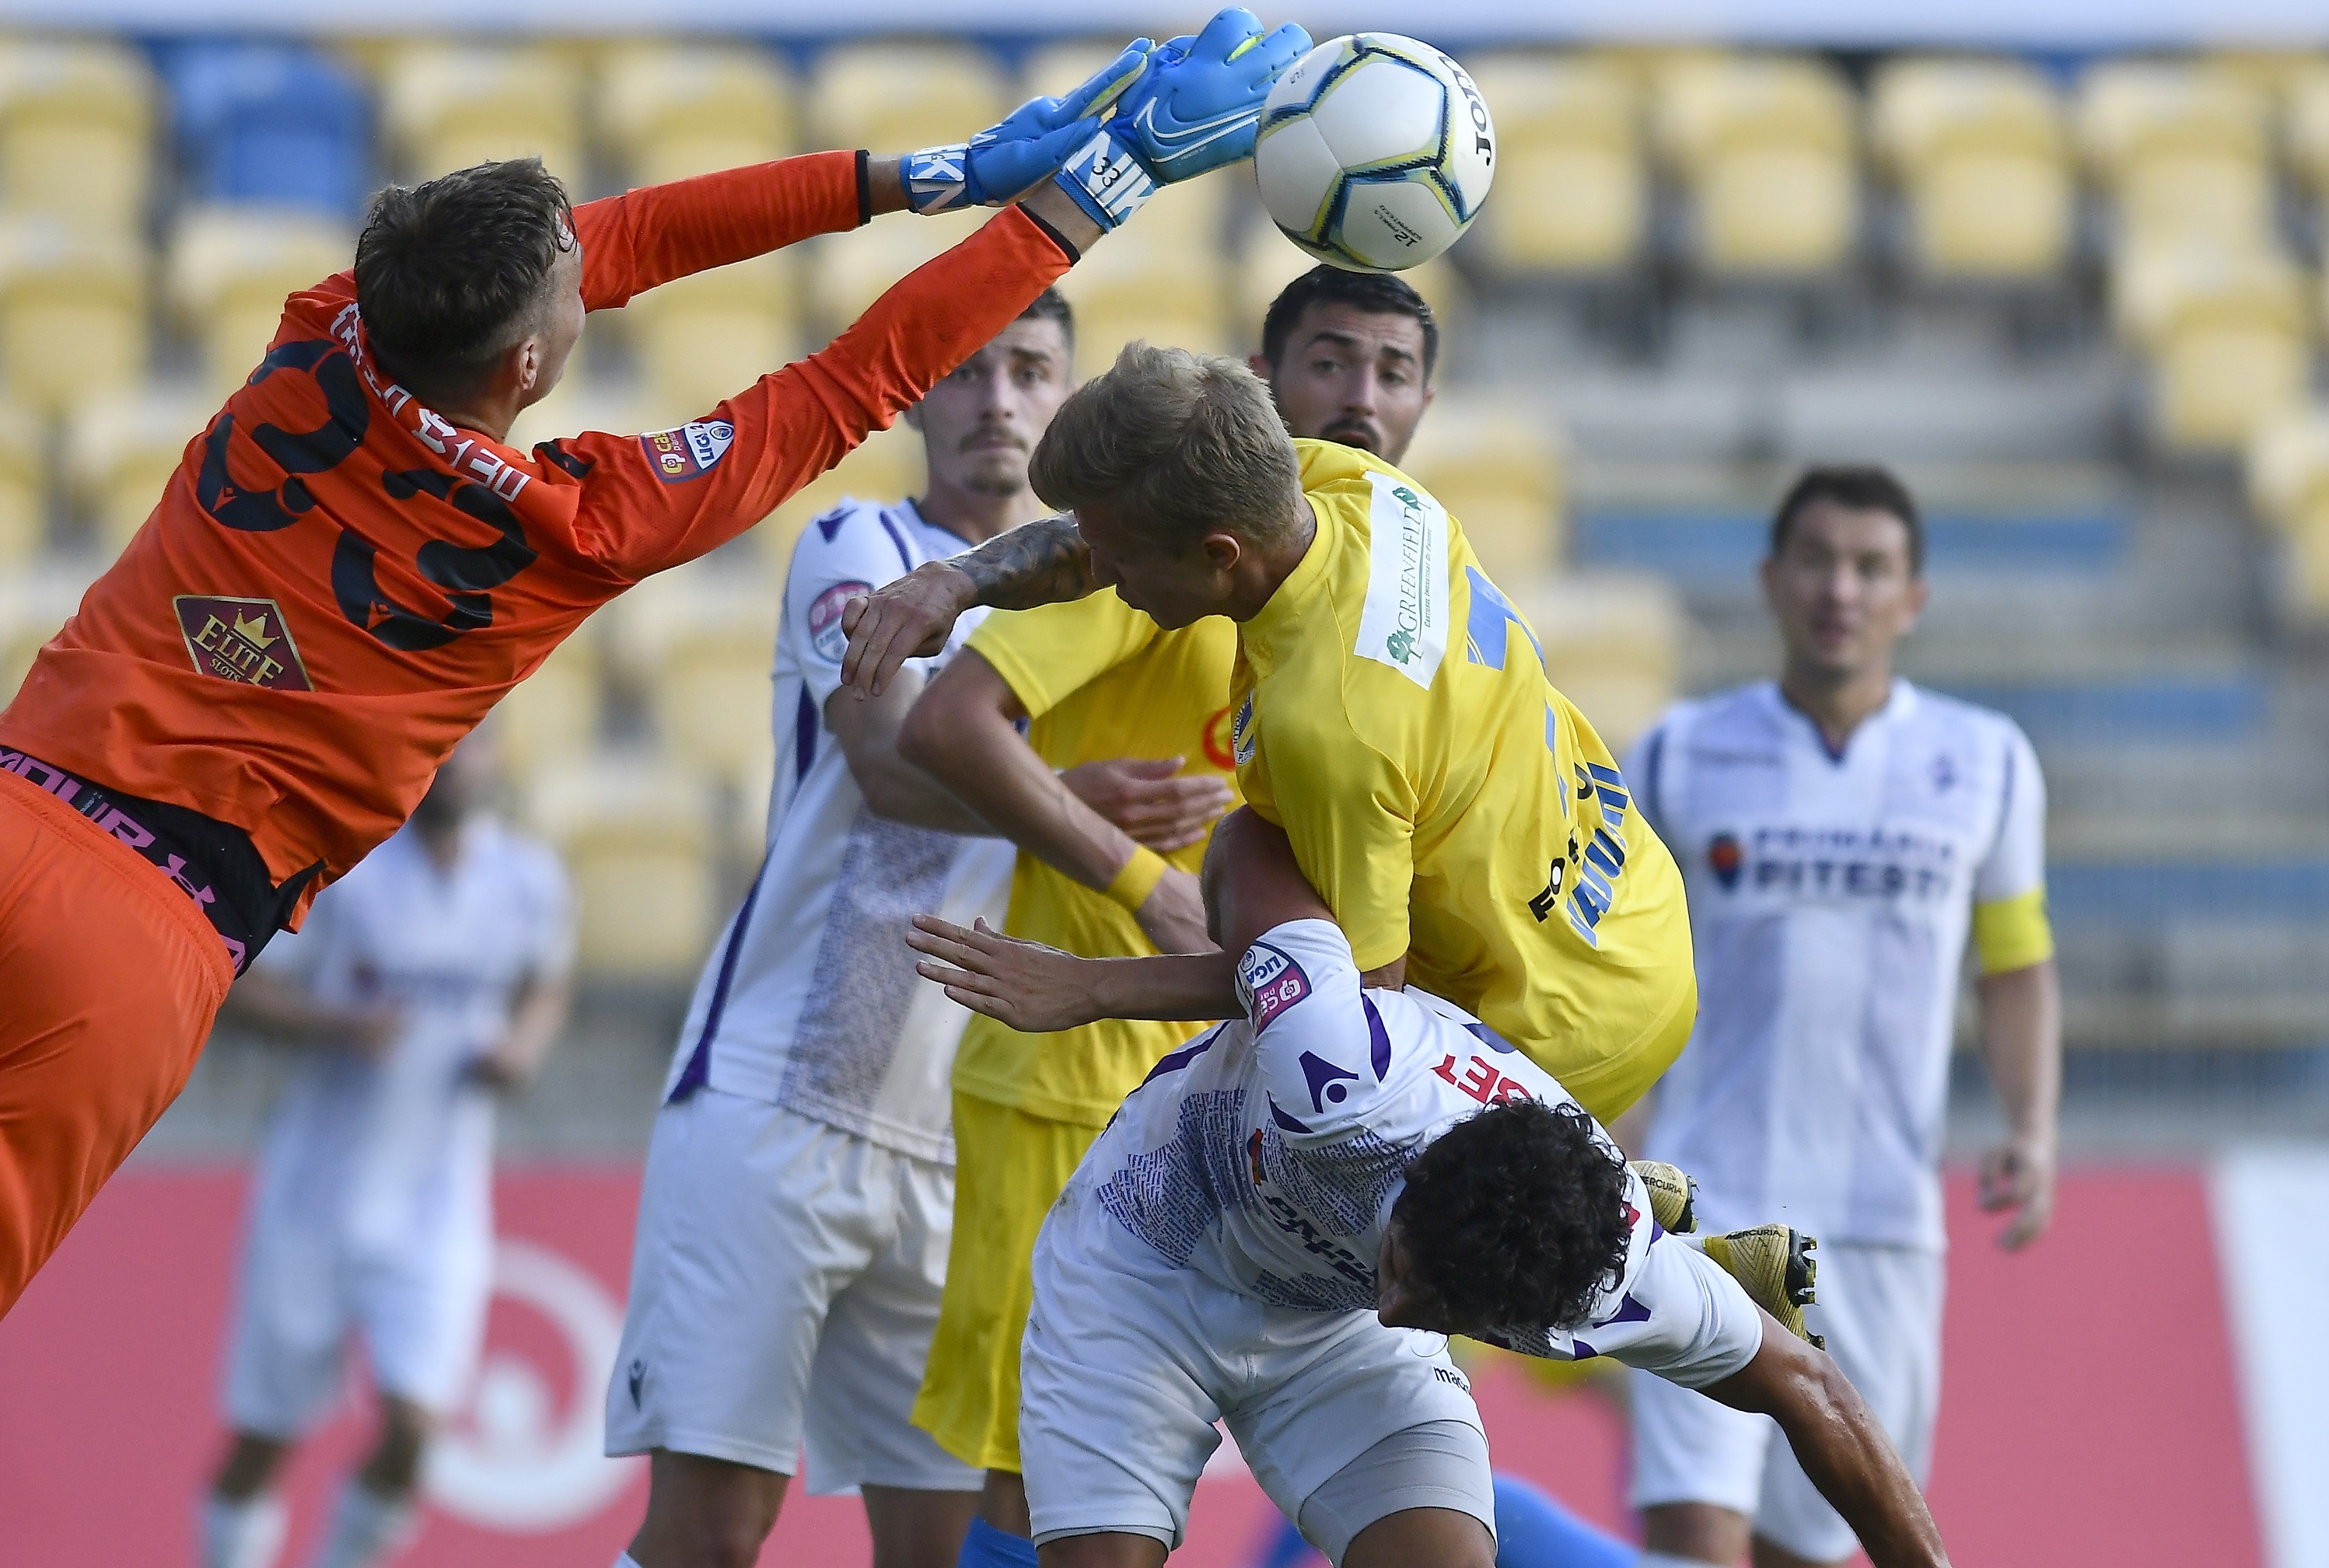 Petrolul - FC Argeș 1-2. Oaspeții, cu două goluri pe final, urcă pe loc de baraj. Gazdele au ratat șansa de a promova